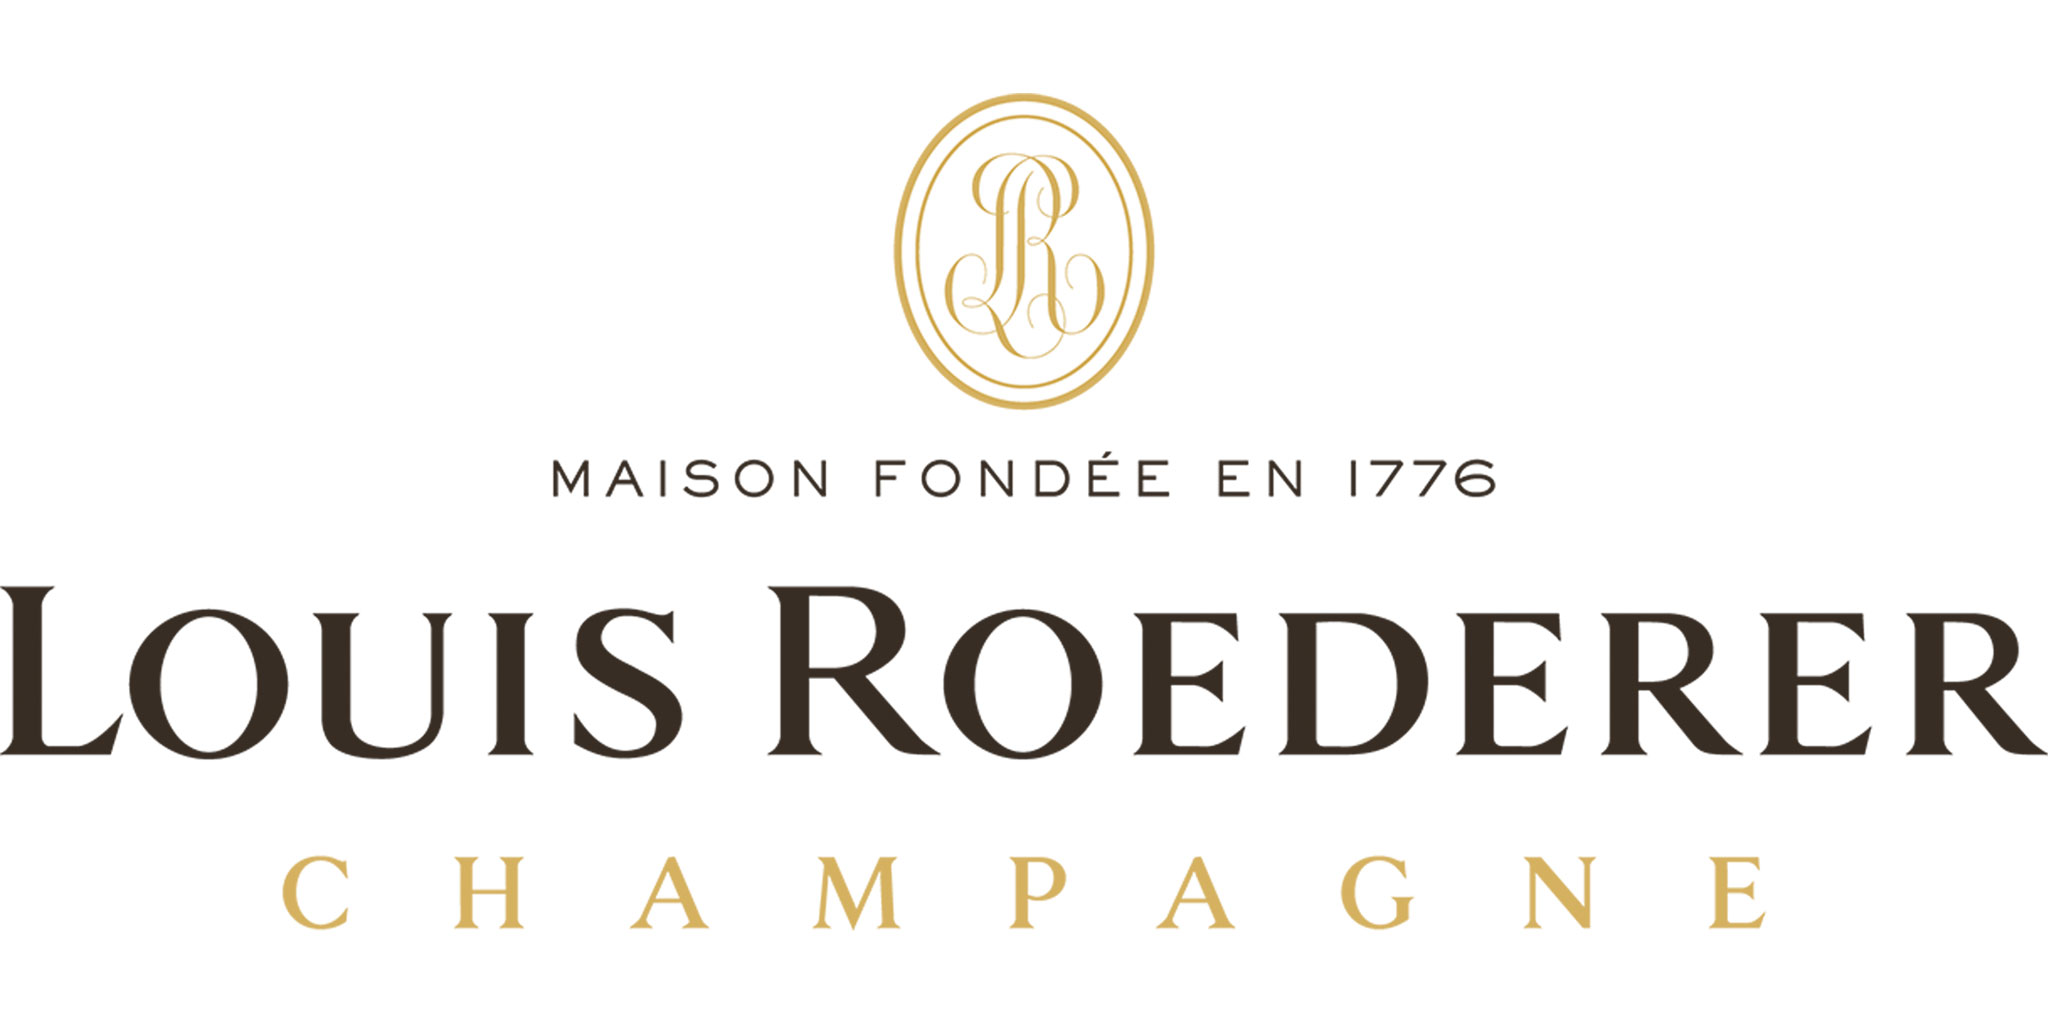 Louis Roederer logo